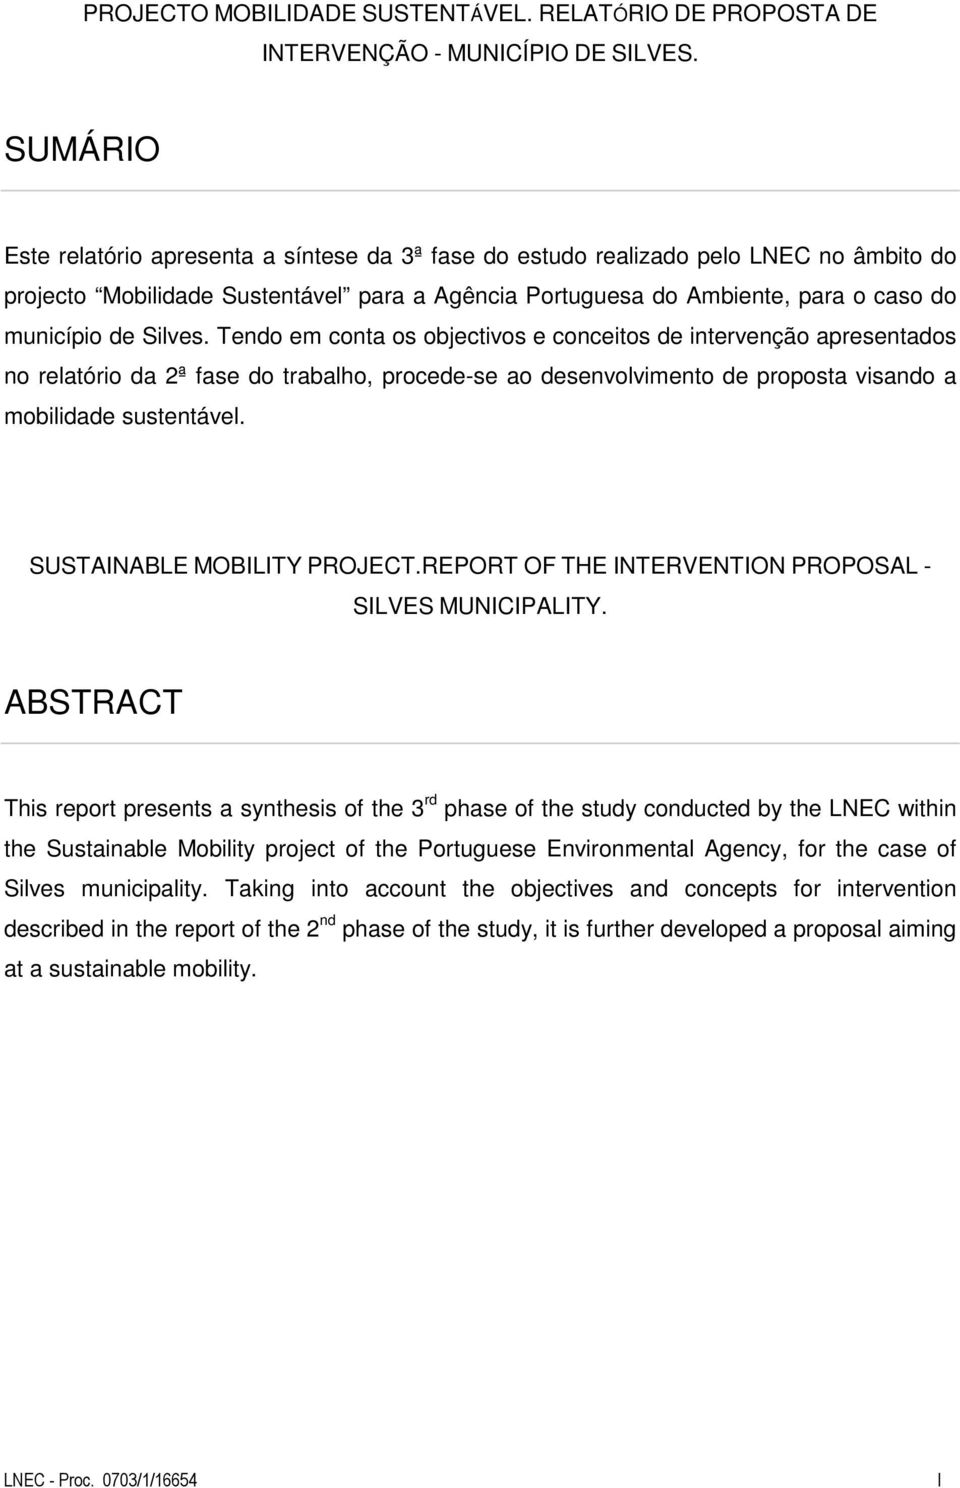 Silves. Tendo em conta os objectivos e conceitos de intervenção apresentados no relatório da 2ª fase do trabalho, procede-se ao desenvolvimento de proposta visando a mobilidade sustentável.